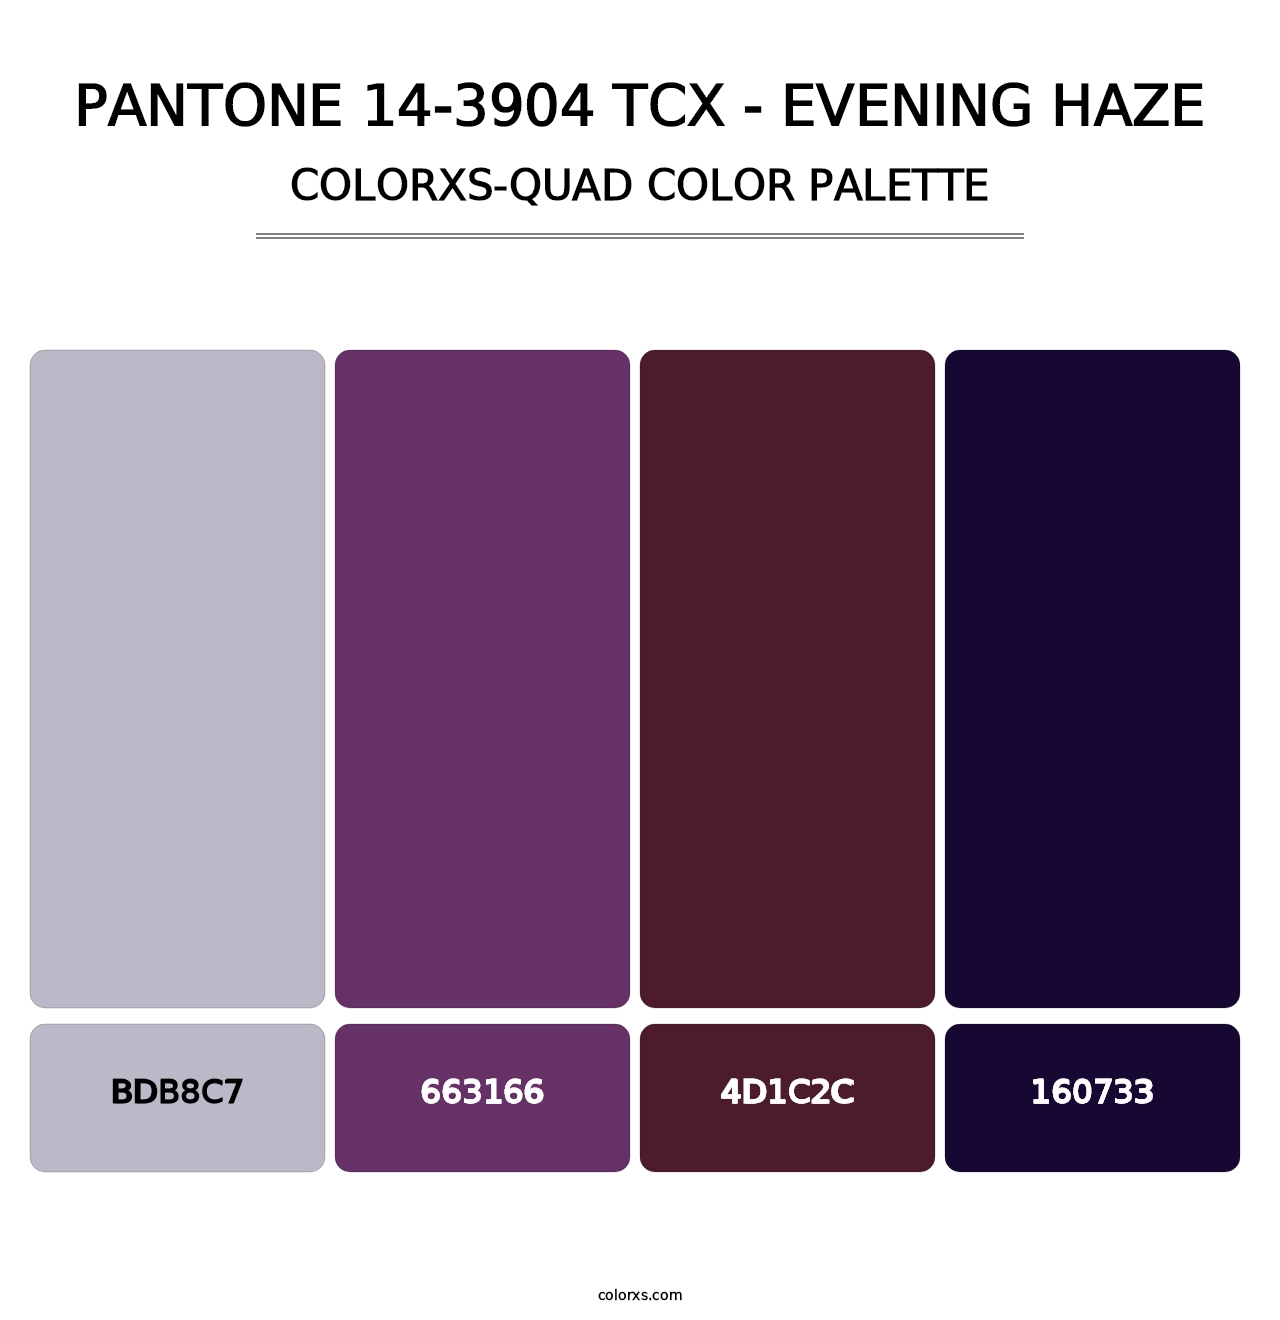 PANTONE 14-3904 TCX - Evening Haze - Colorxs Quad Palette